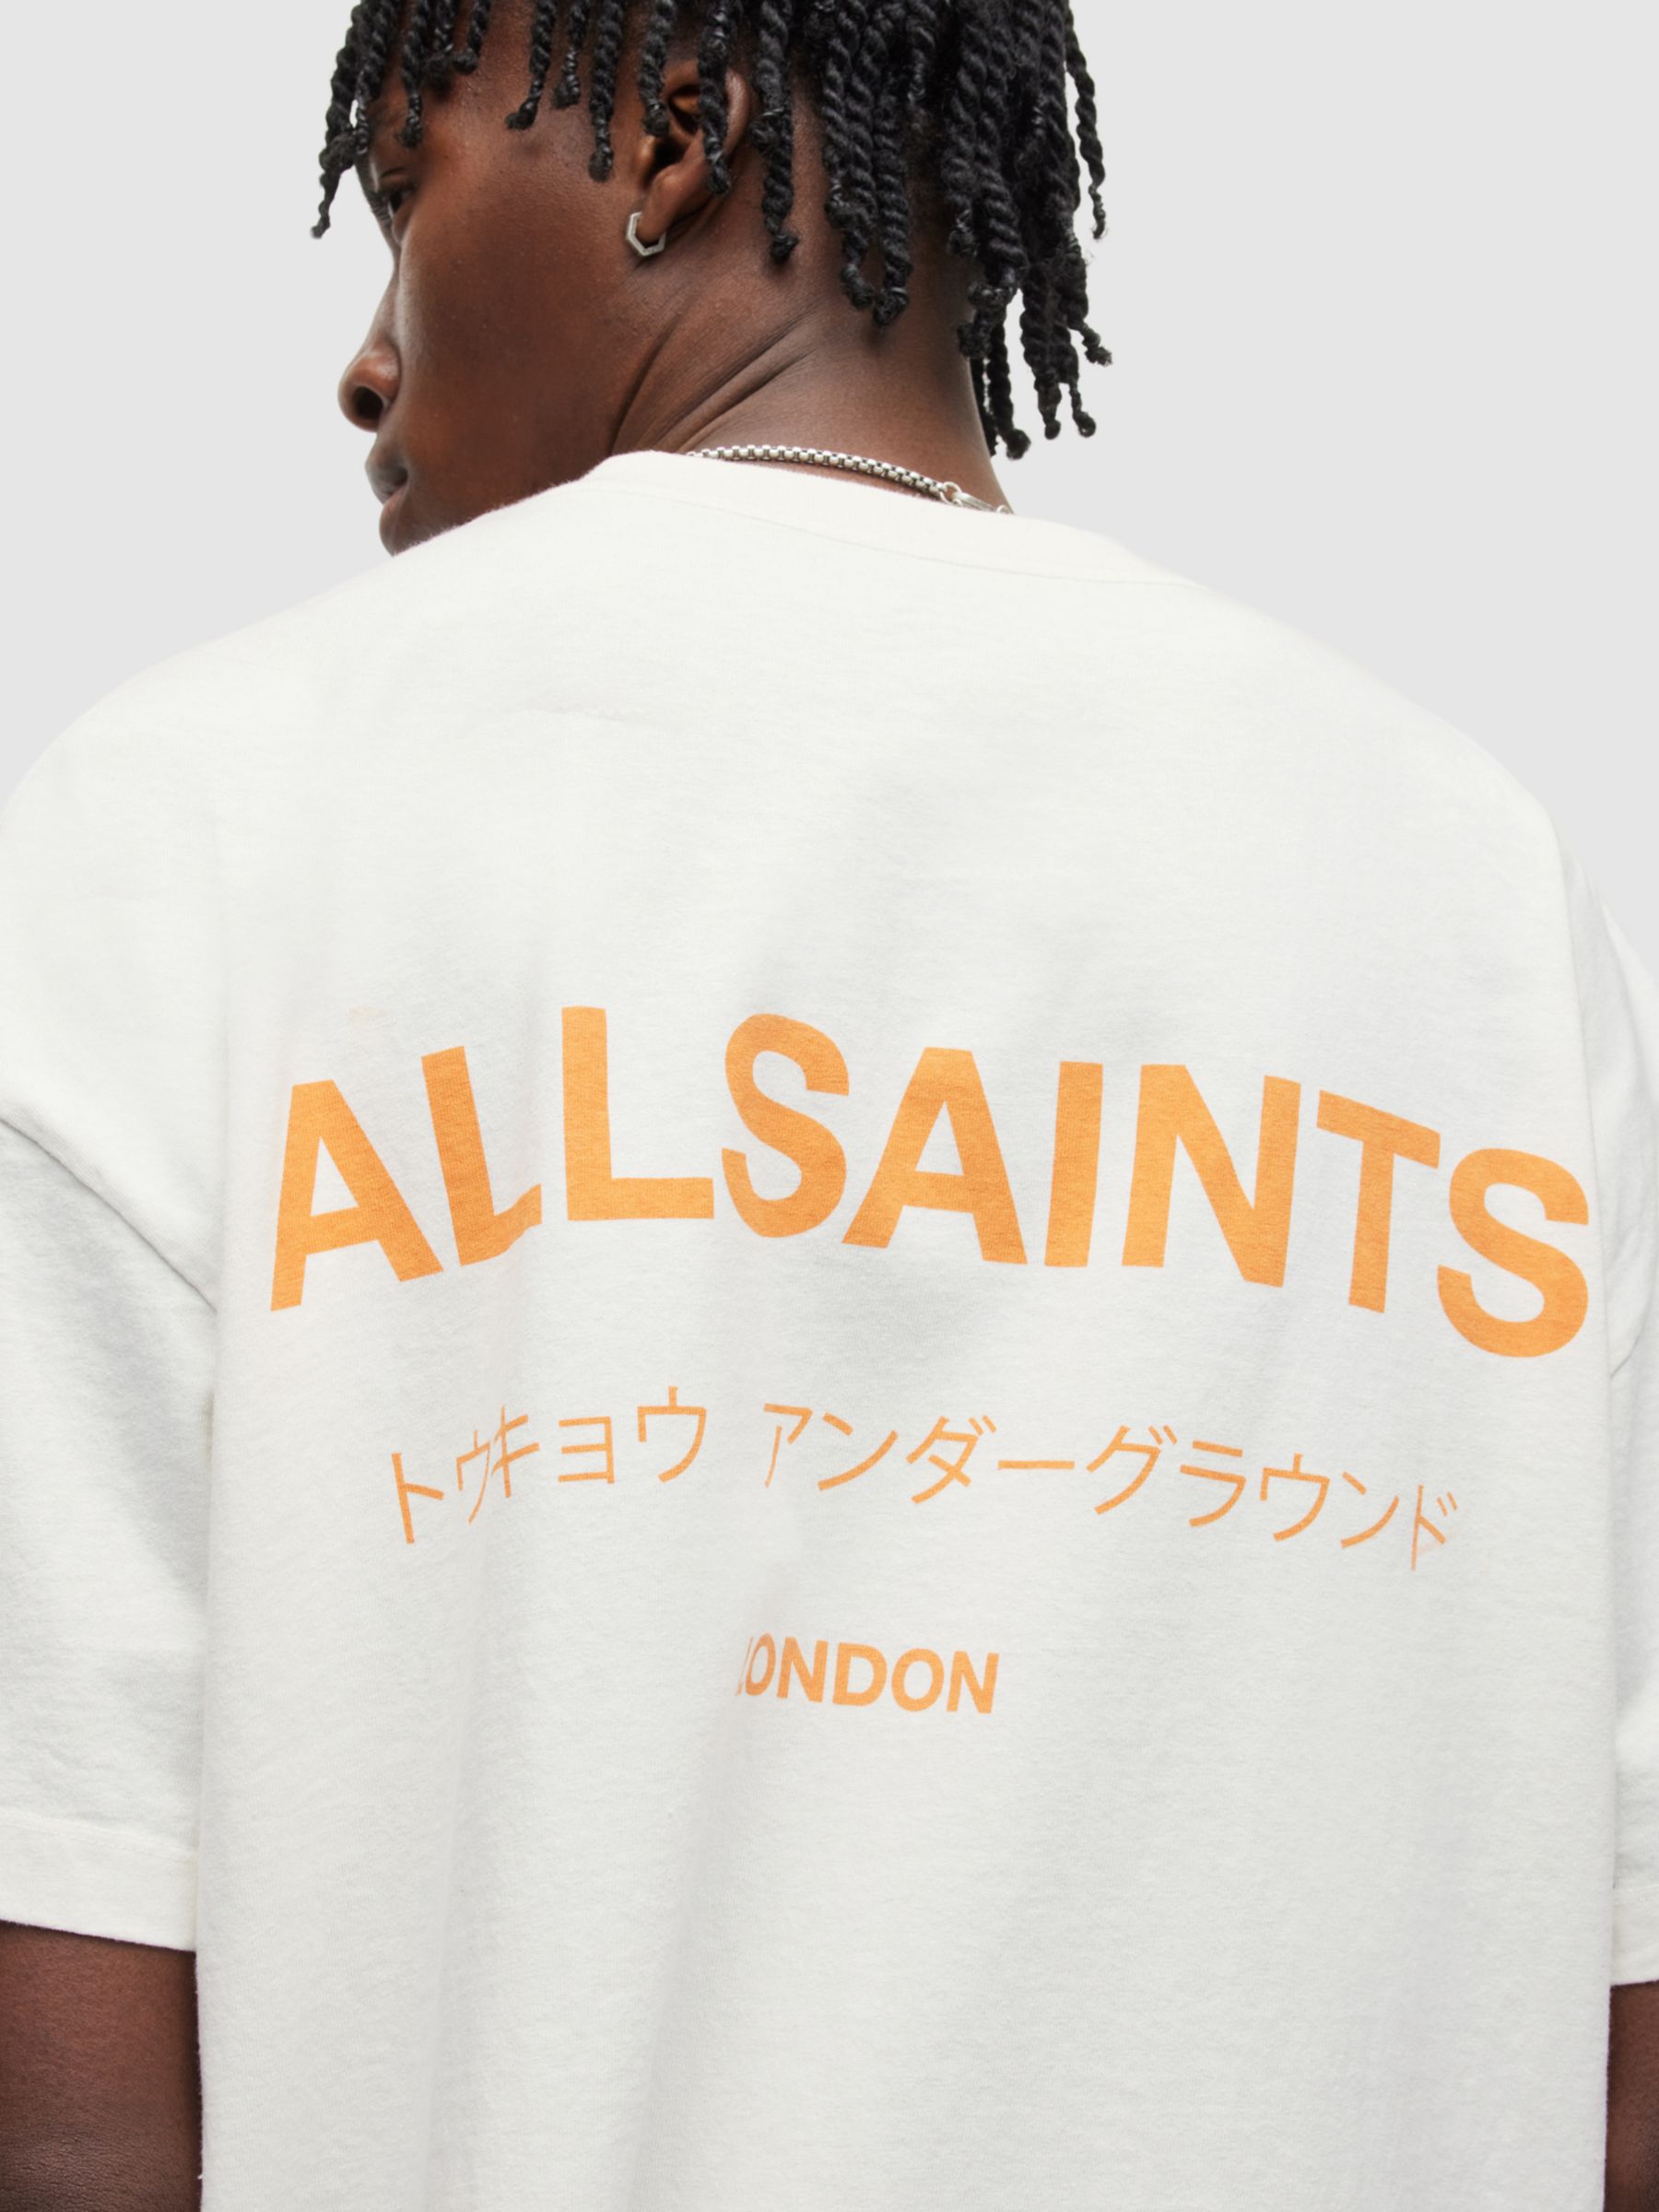 Buy AllSaints Underground T-Shirt Online at johnlewis.com